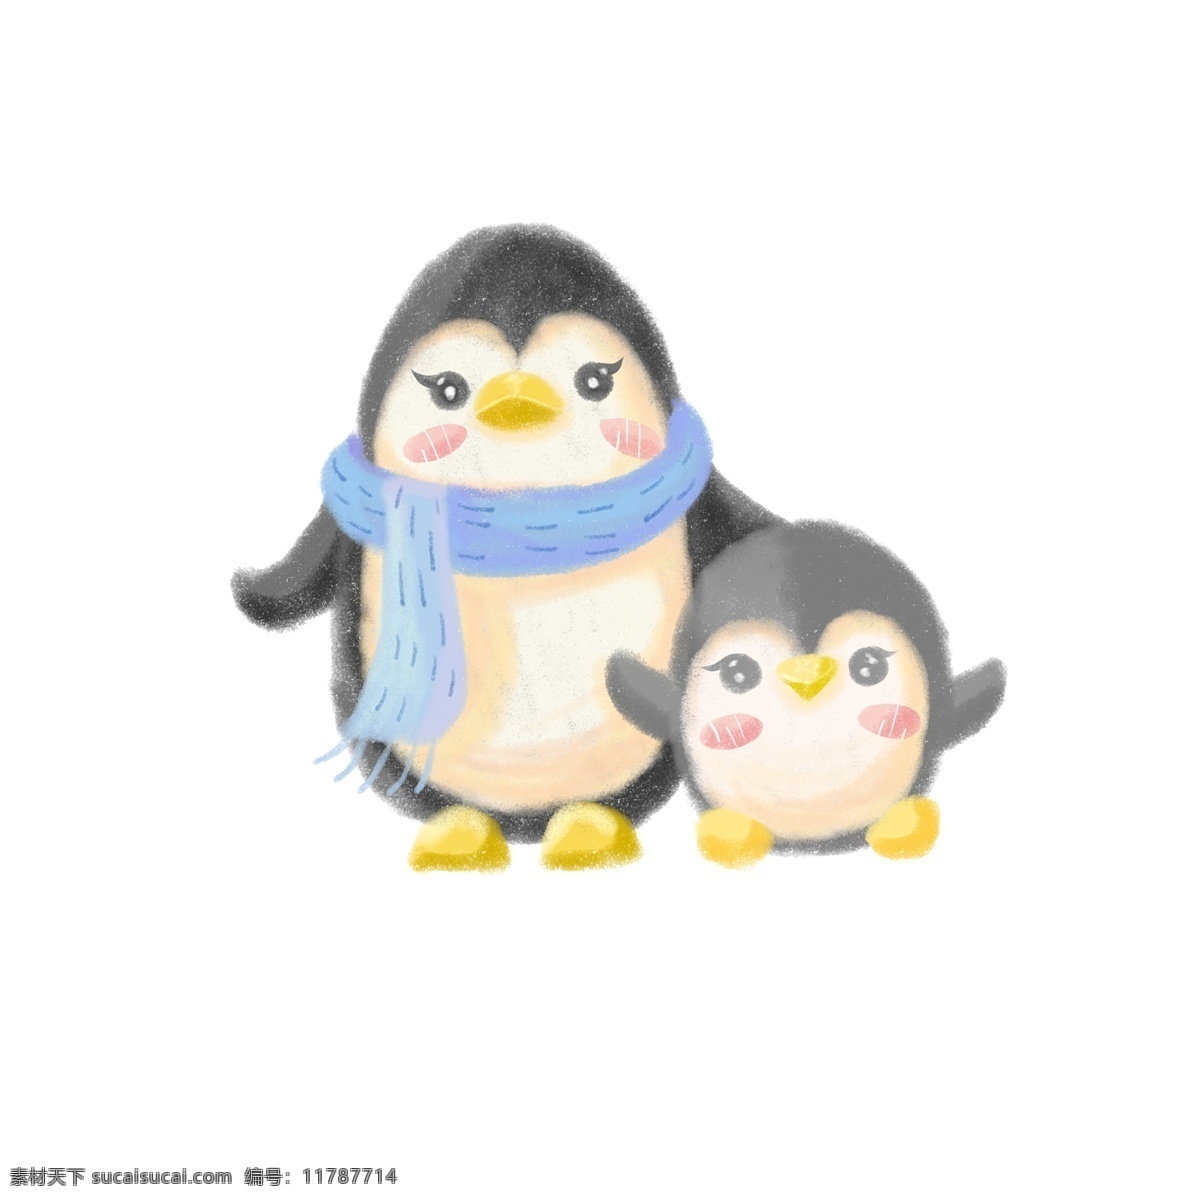 企鹅 母亲 孩子 元素 动物 母亲节 可爱 小清新 爱 亲情